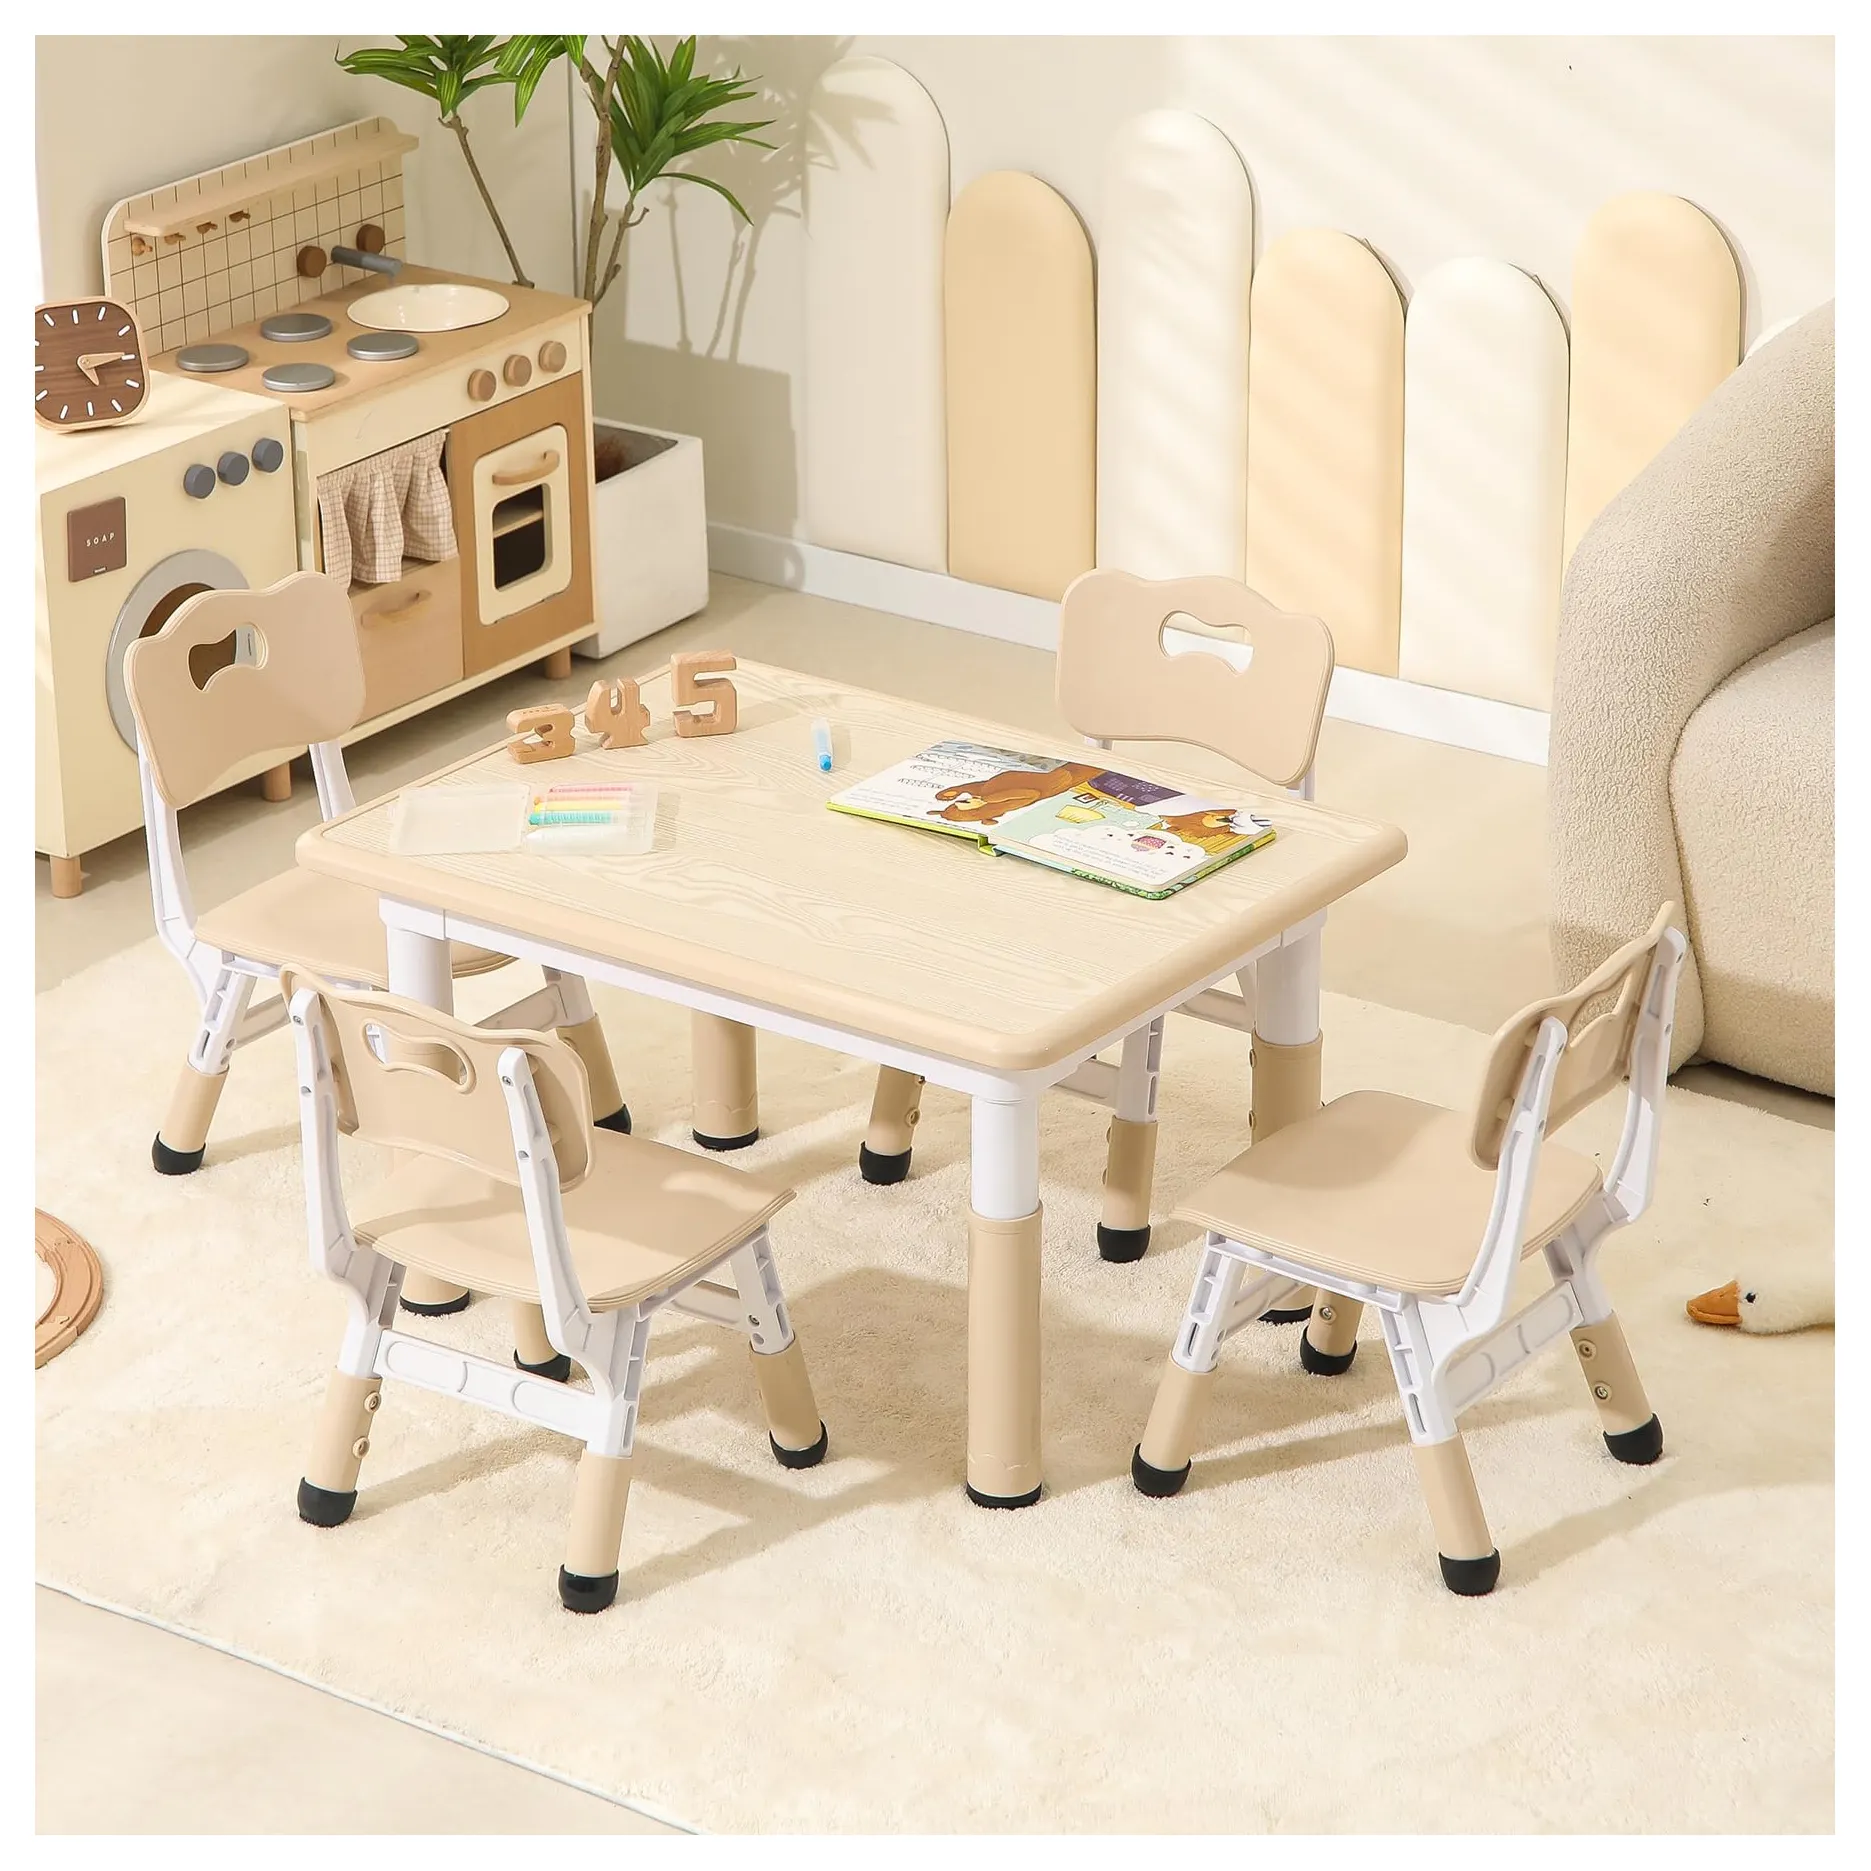 어린이 테이블과 의자, 유아용 테이블과 의자, 어린이 낙서 테이블, 어린이 테이블과 의자 세트, 학습 테이블 및 의자 유아 책상